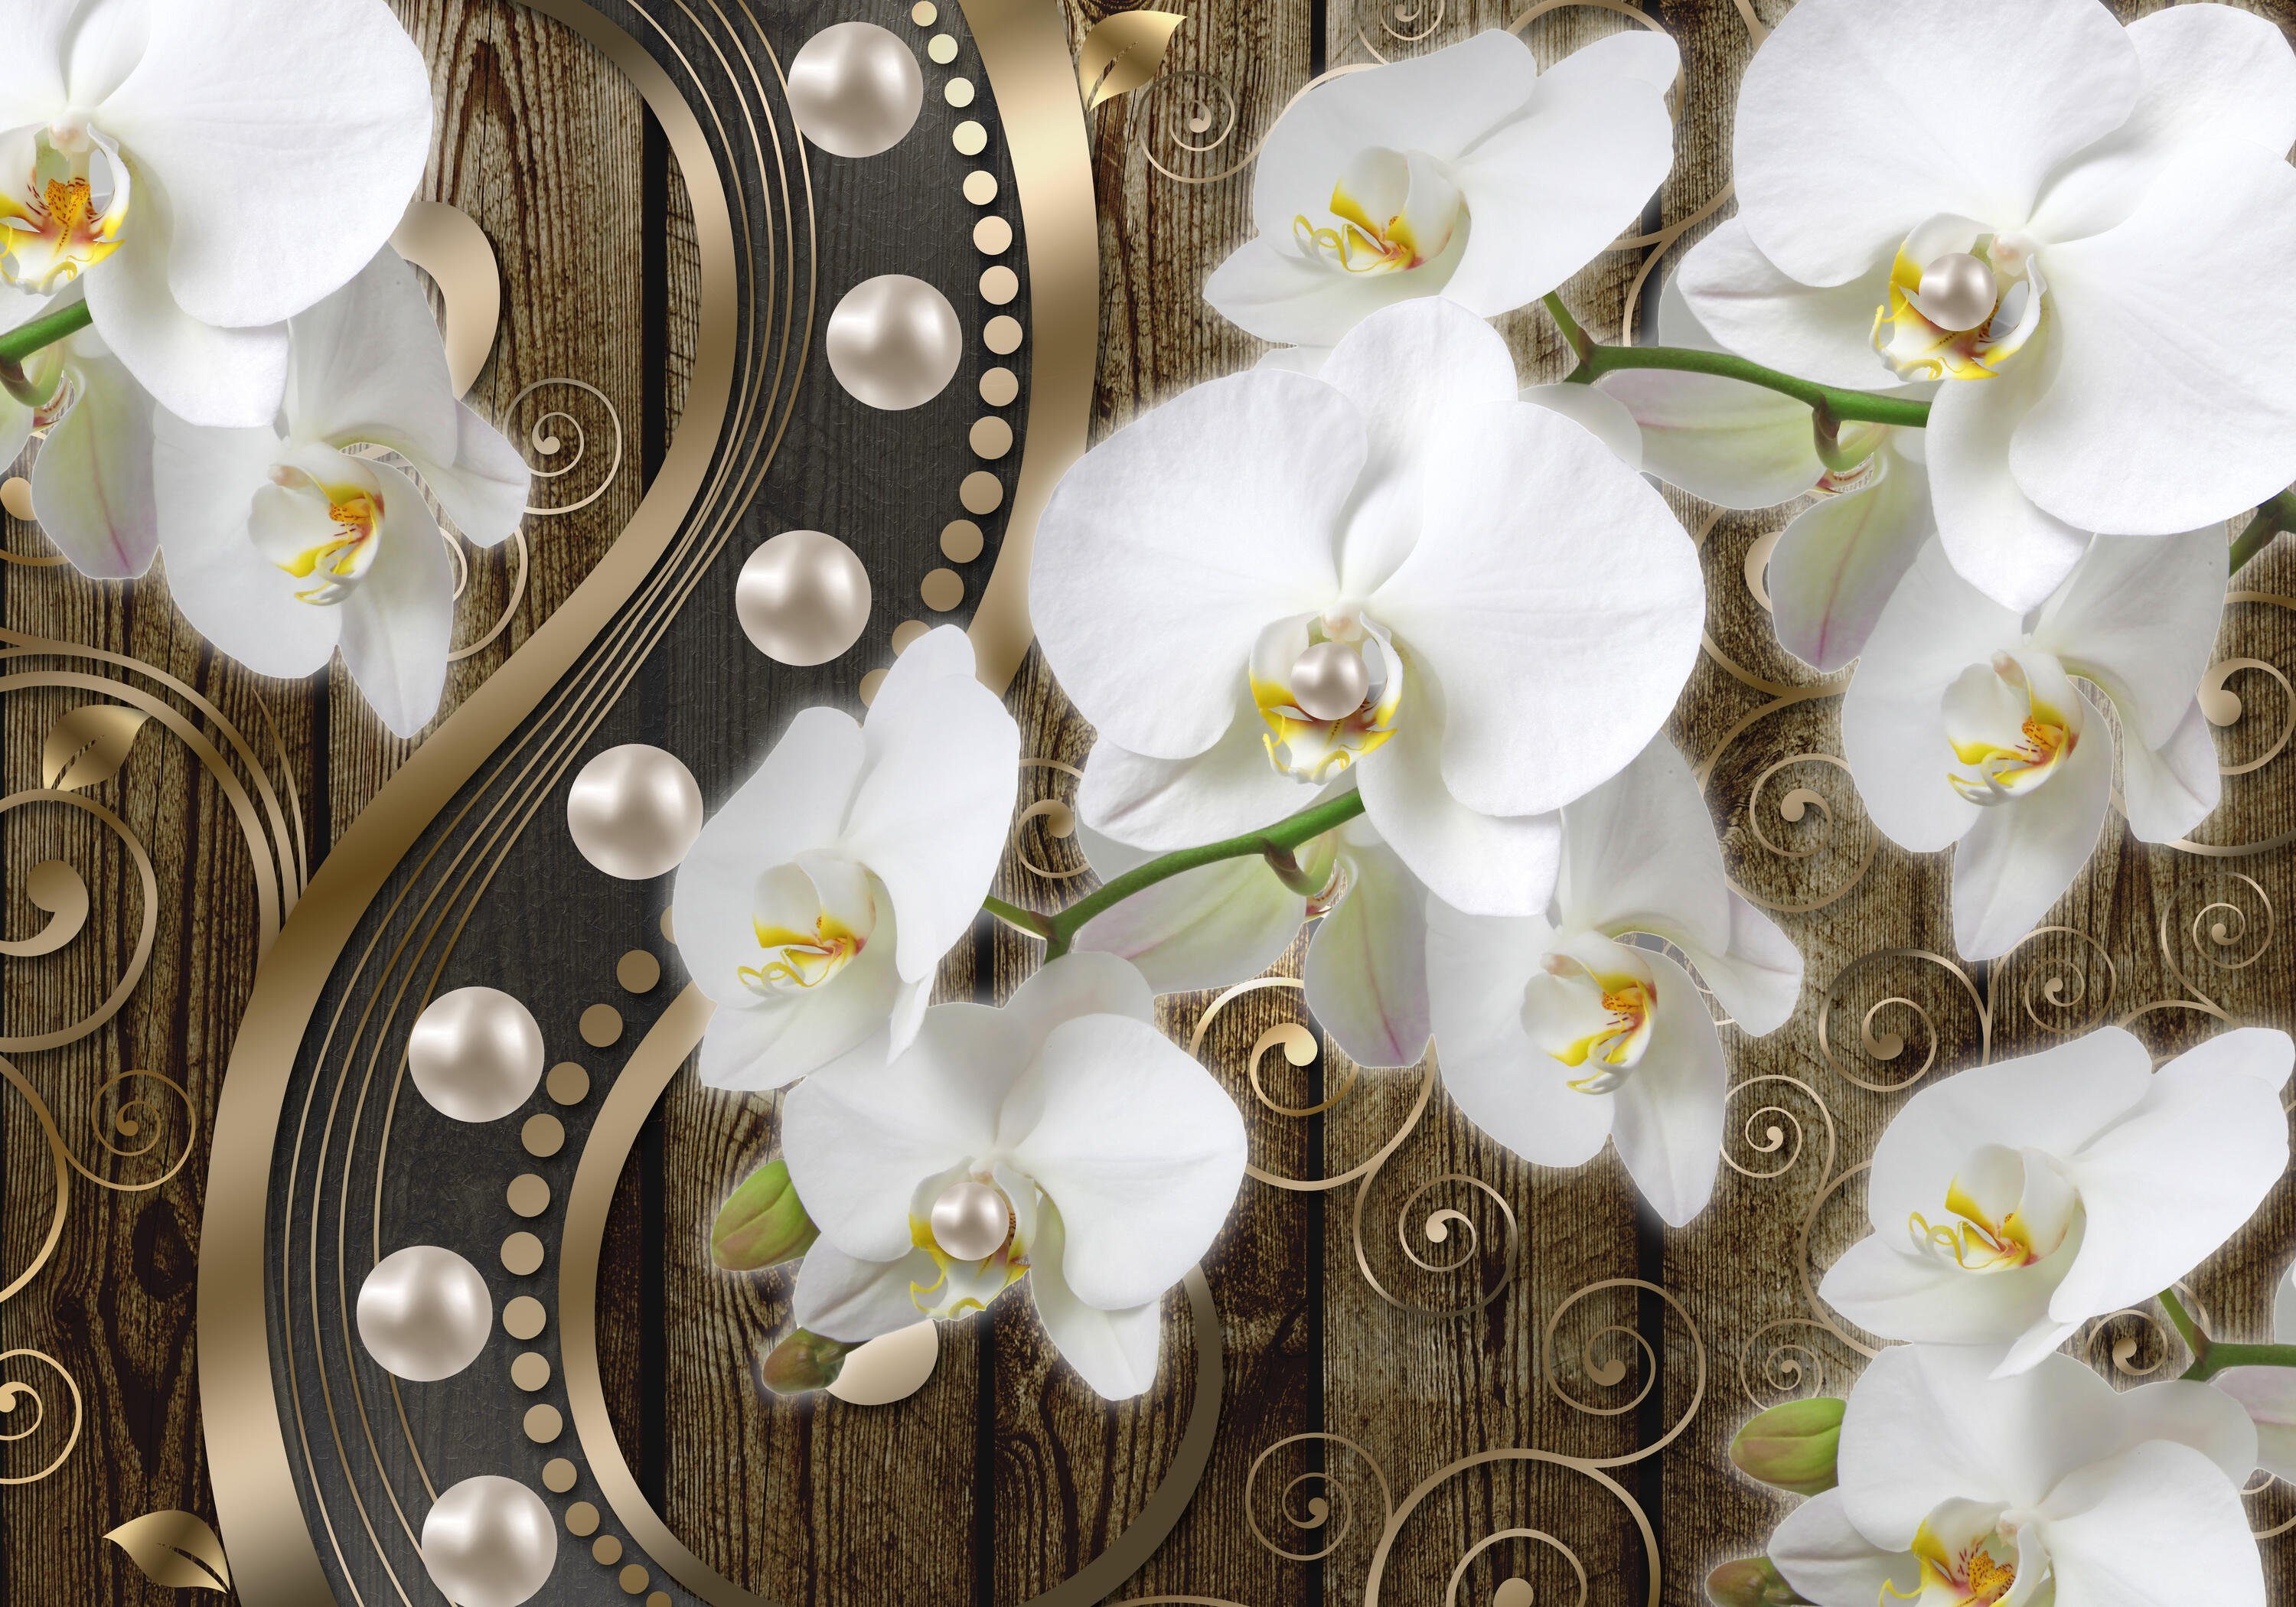 wandmotiv24 Fototapete 3D Effekt Orchideen Perlen, matt, Motivtapete, Vliestapete Wandtapete, glatt